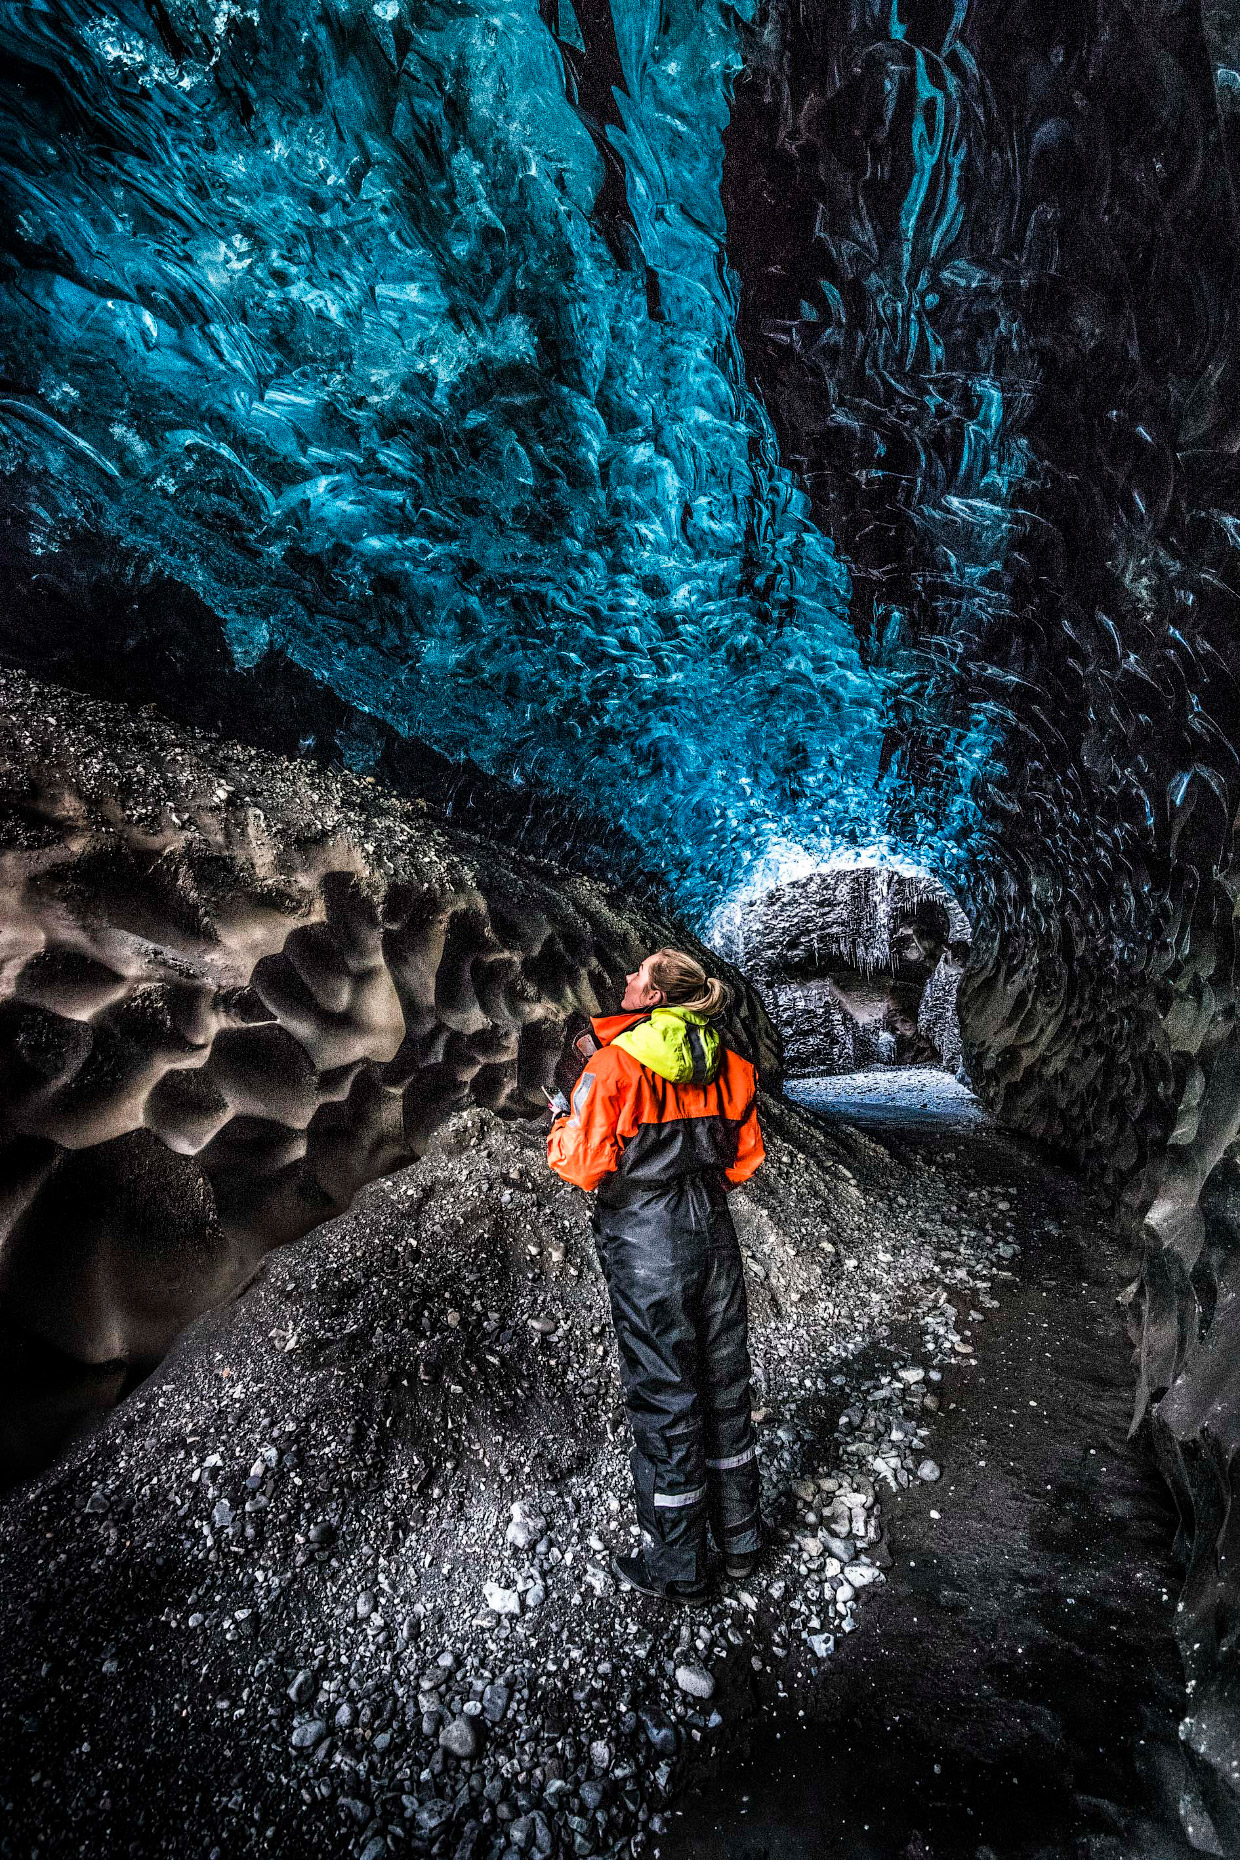 Ледяные пещеры на крупнейшем леднике в Исландии